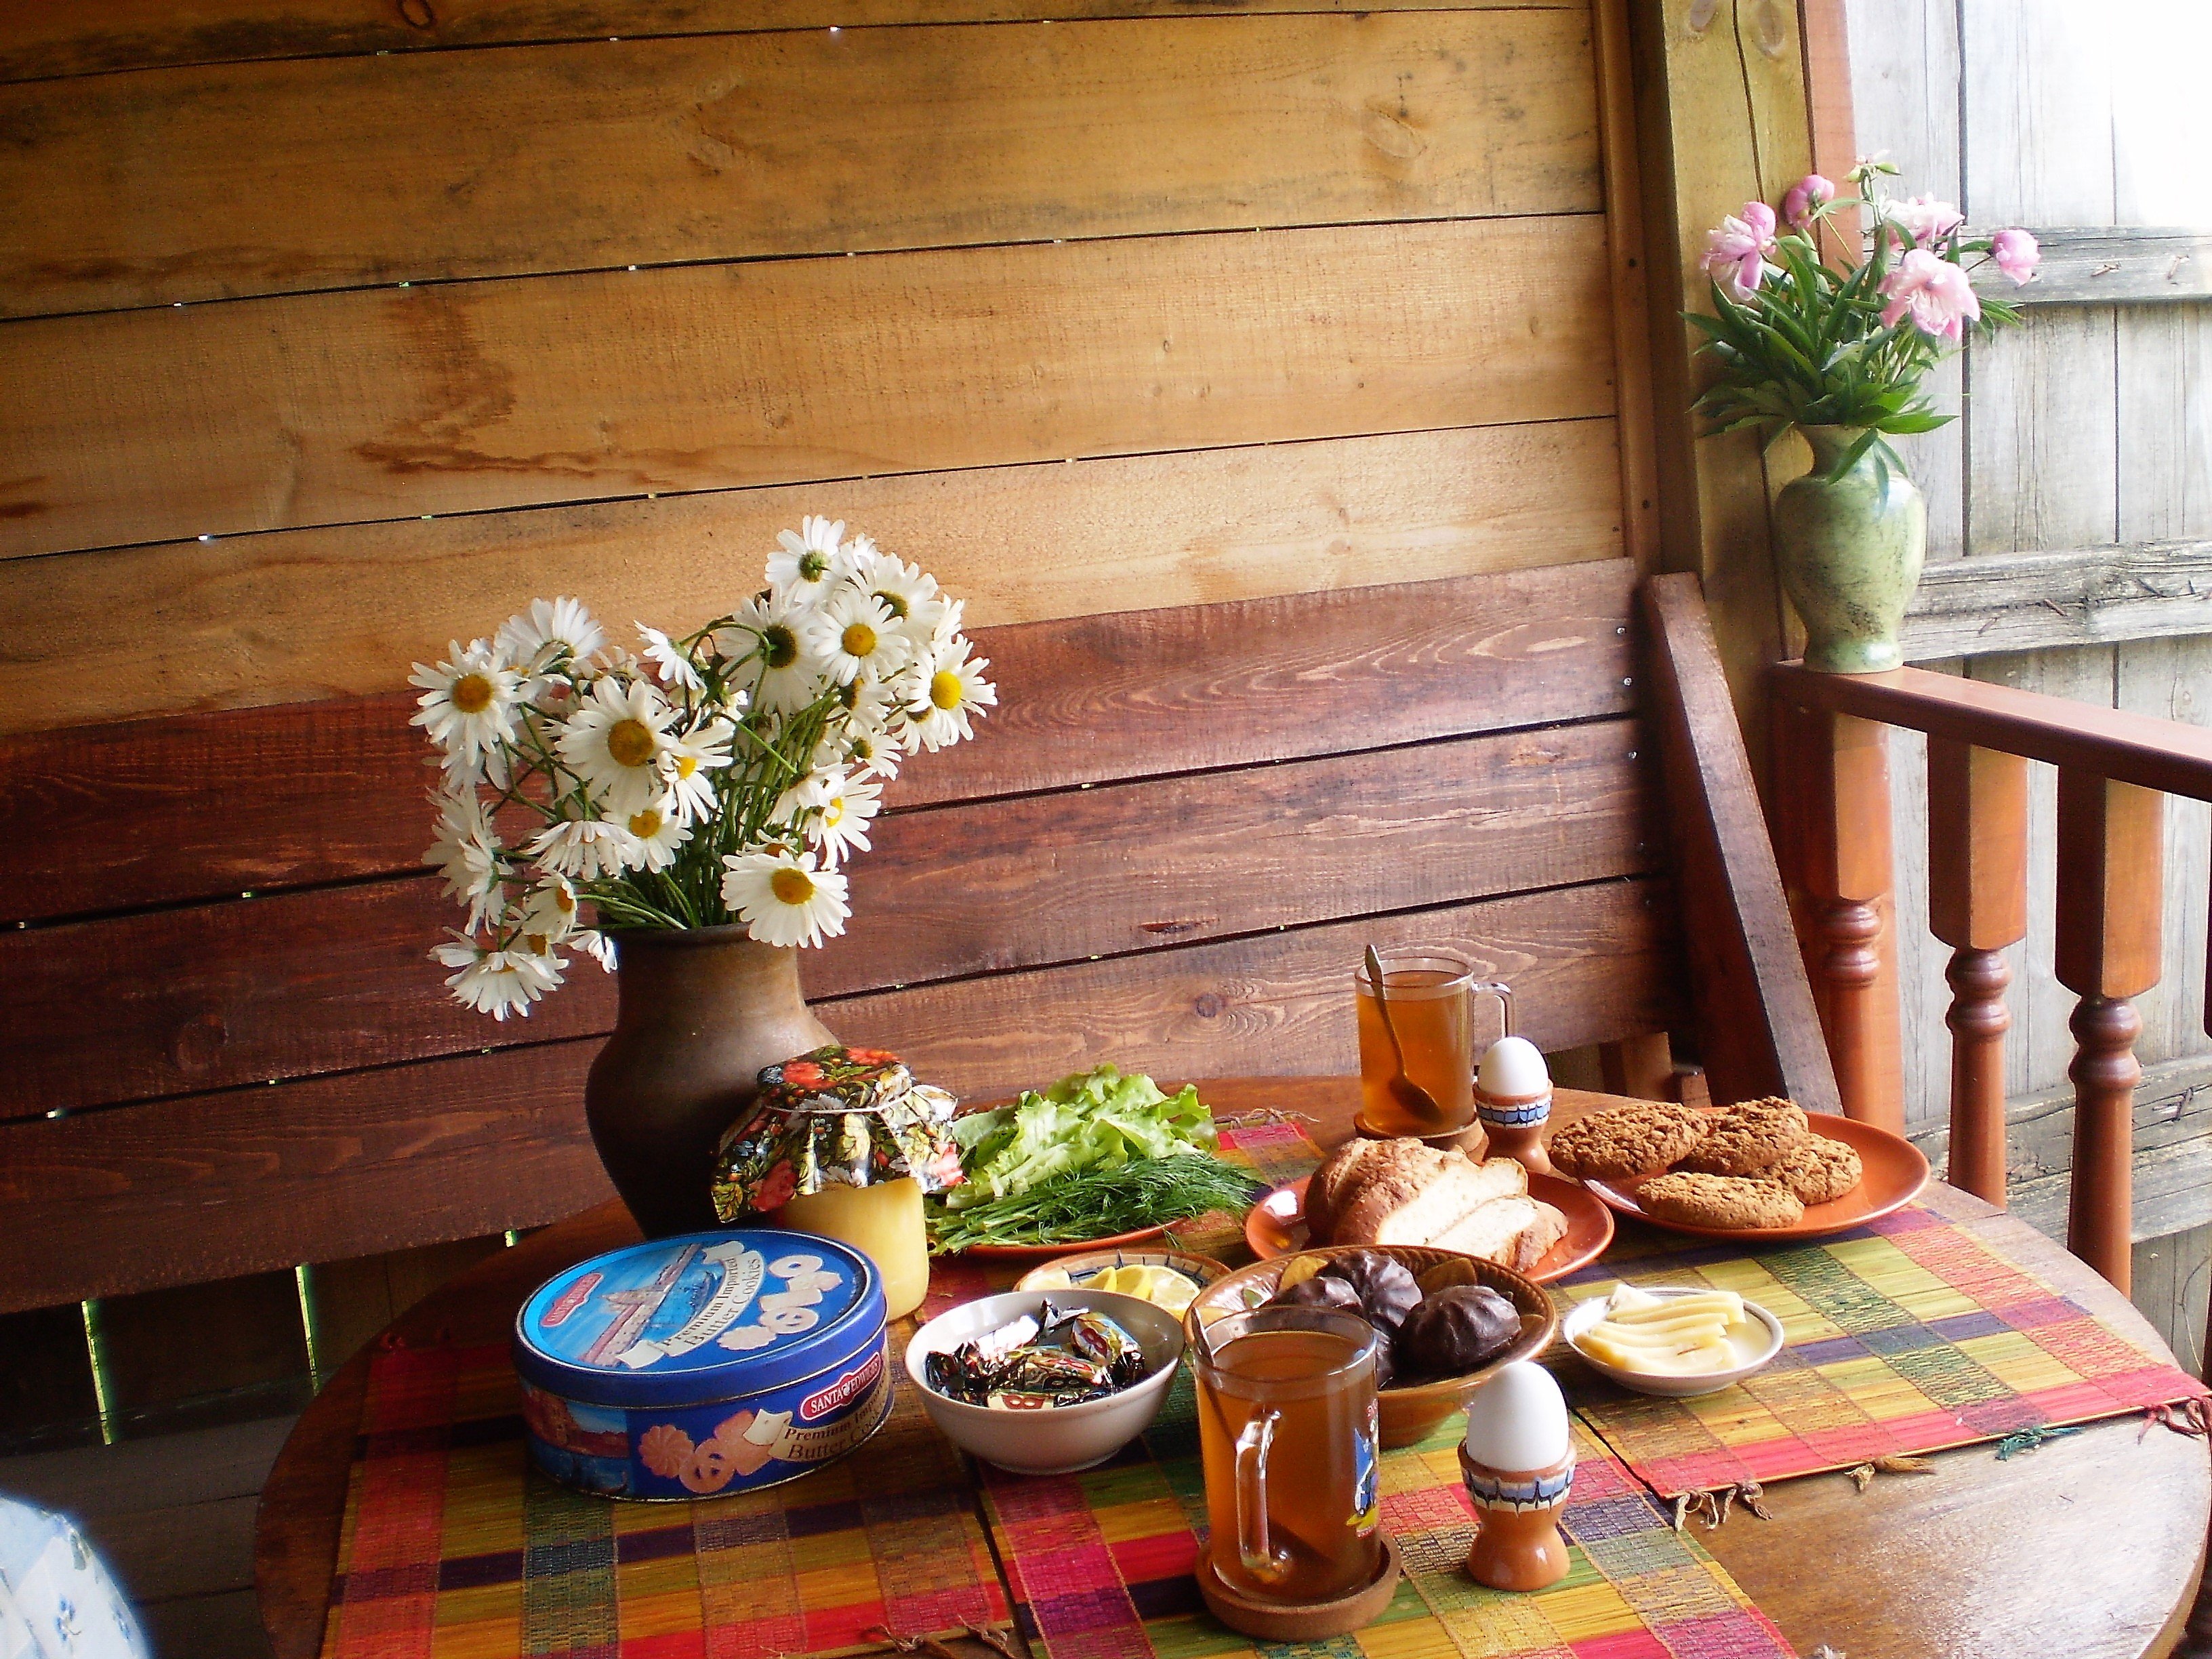 Села завтрак. Деревенский стол. Деревенский стол с едой. Стол в деревенском доме. Завтрак в деревенском стиле.